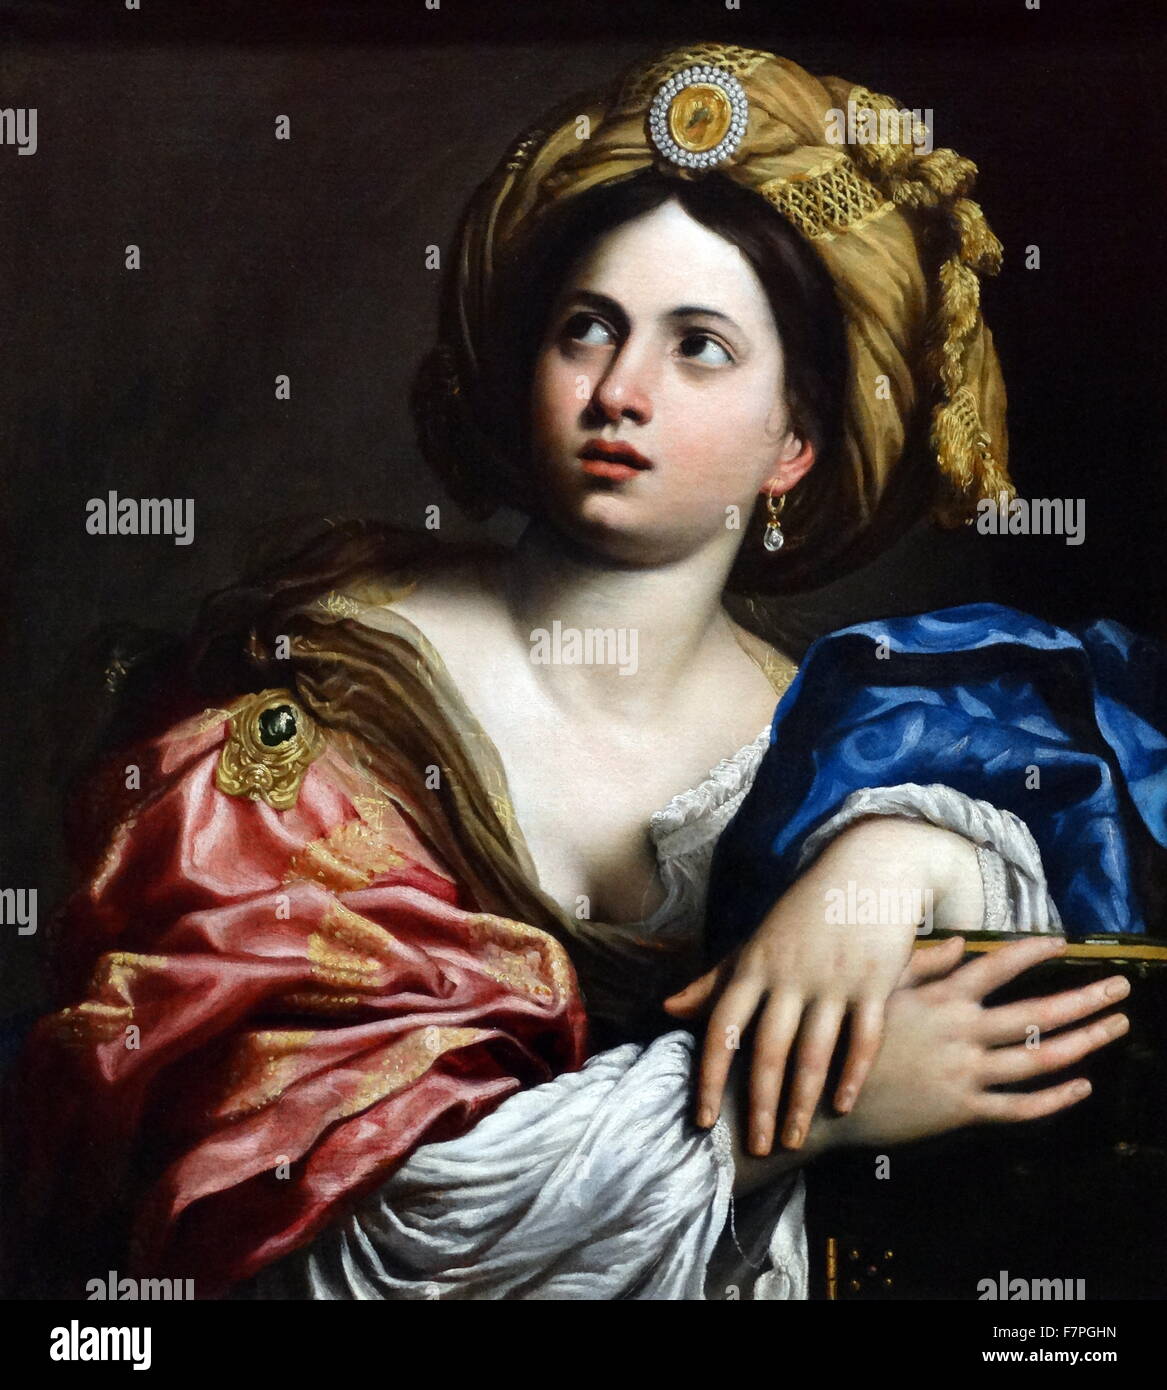 Pintura titulada "La Sibila persa" por Domenichino (1581-1641), pintor barroco italiano. Fecha Siglo xvii Foto de stock